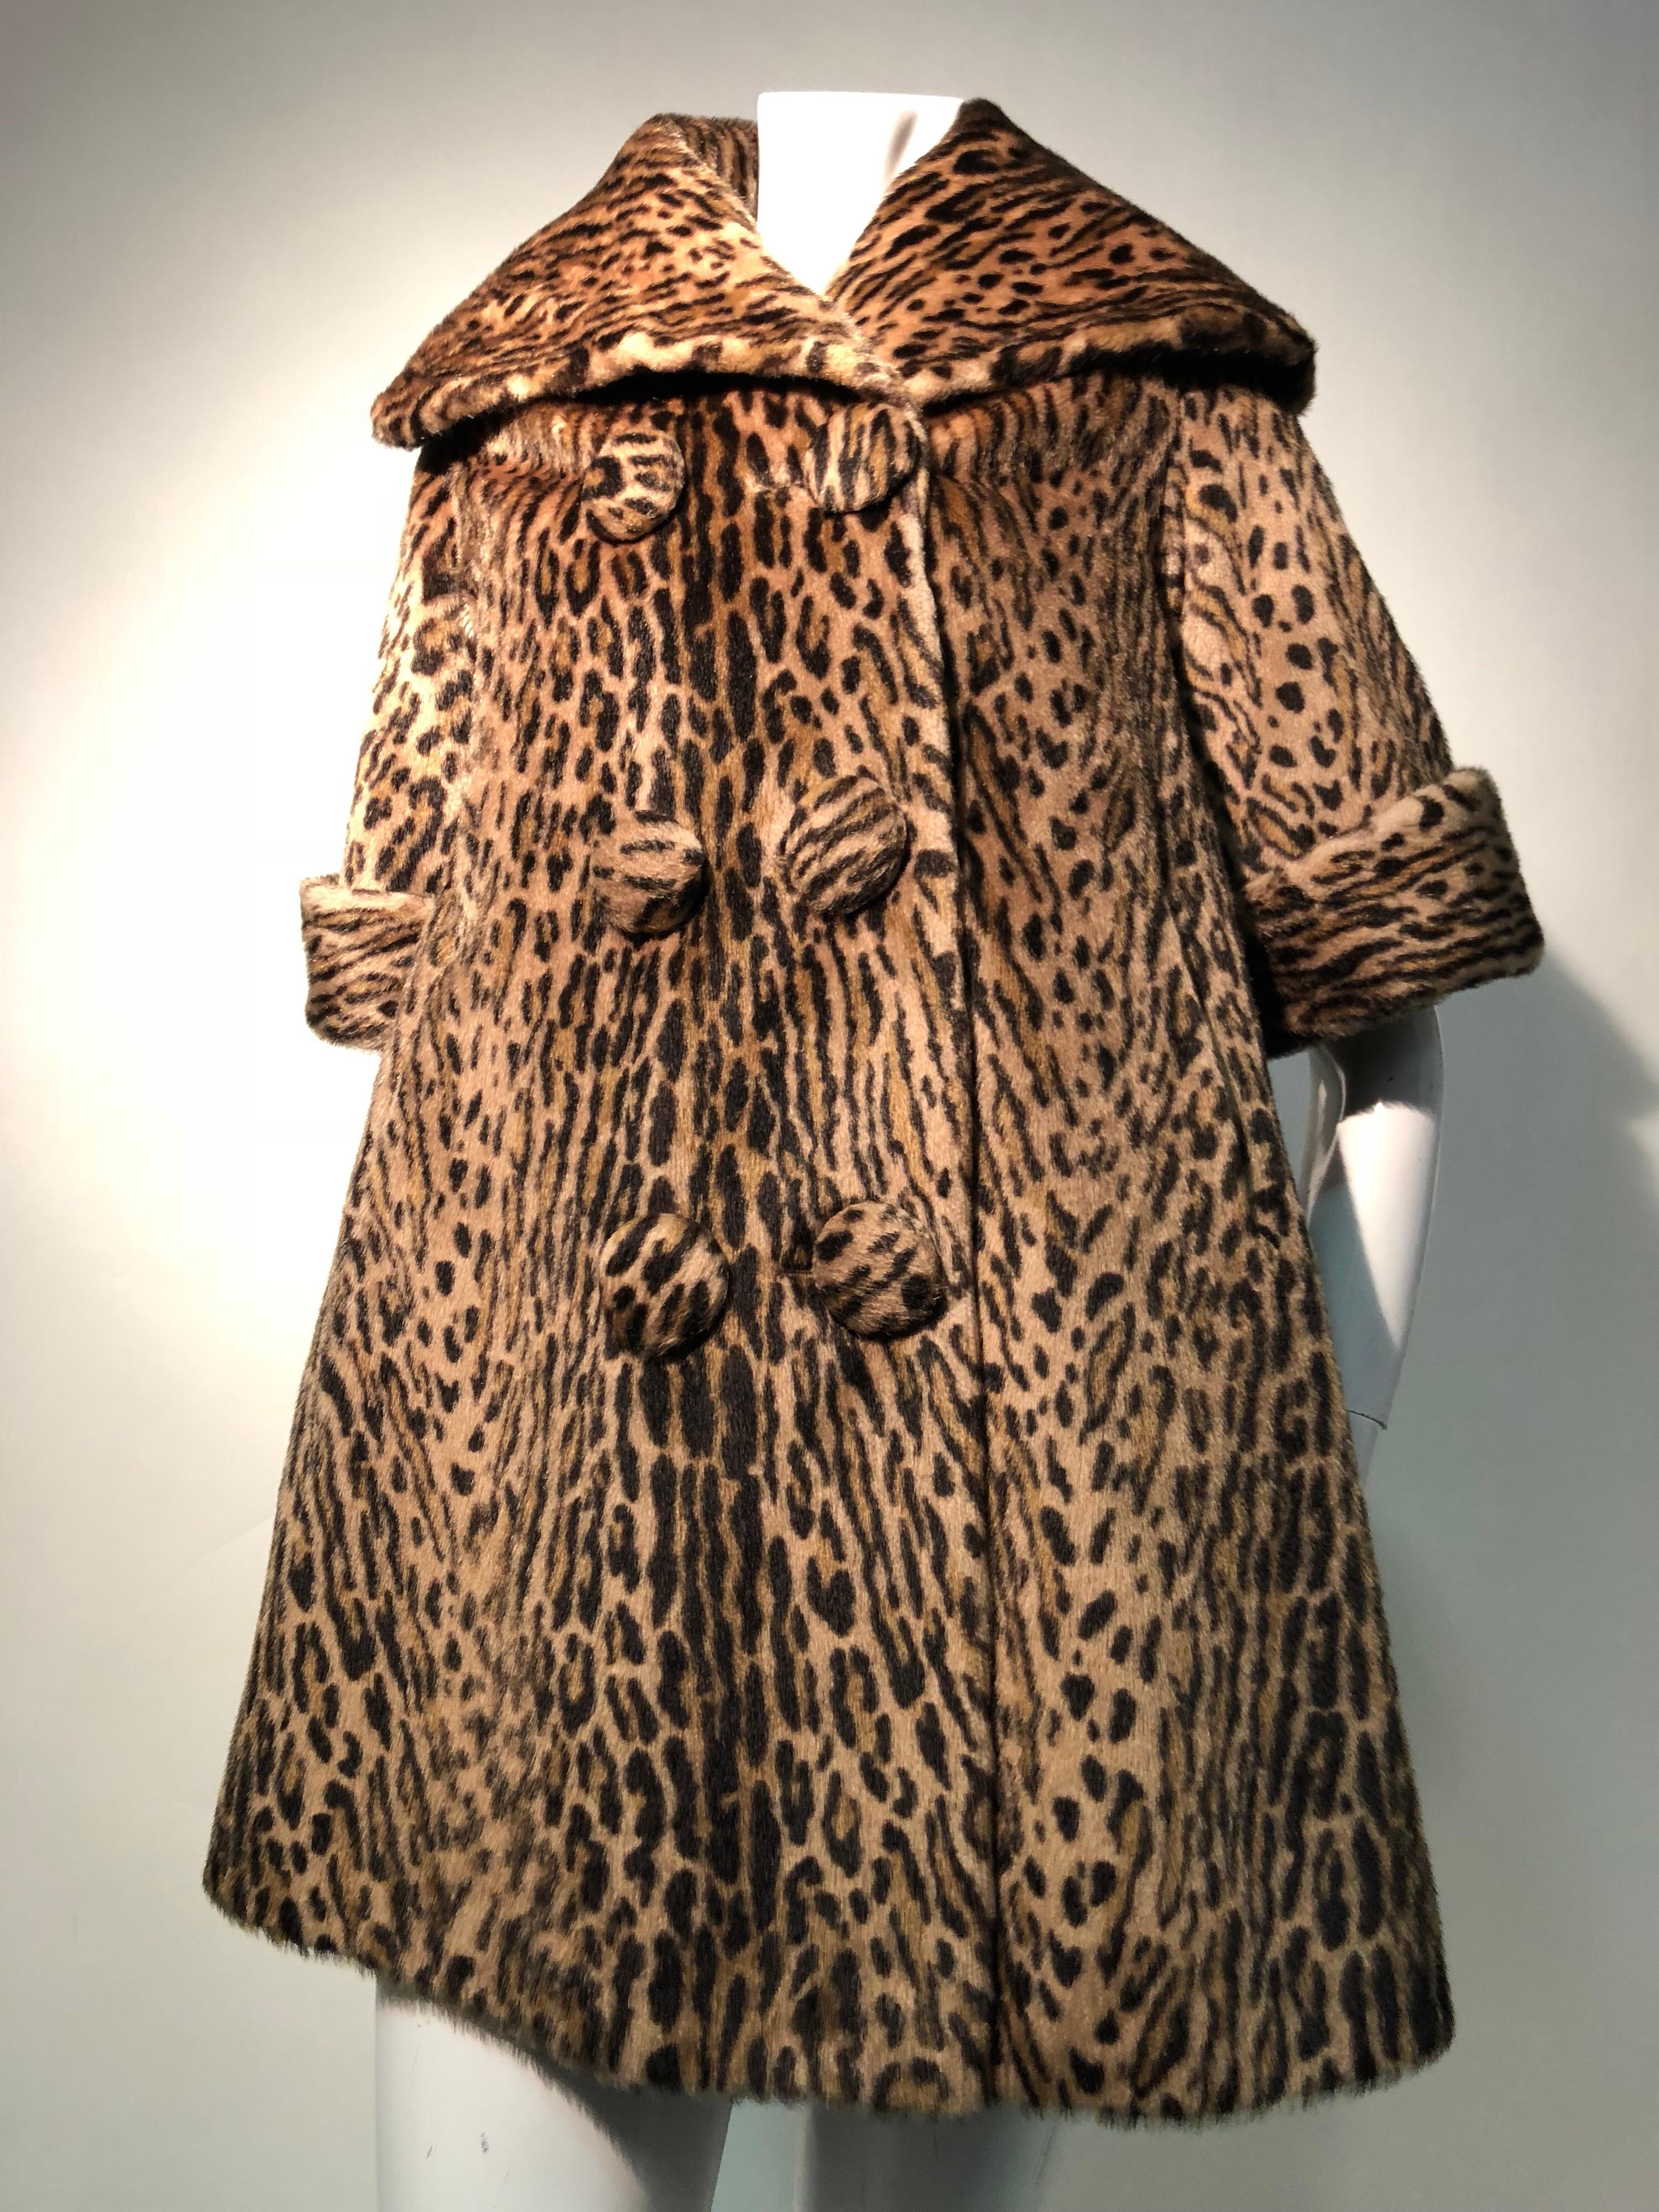 Eine fantastische 1950er Jahre Kashan faux Leopardenfell double-breasted drei Viertel Länge Ärmel Swing-Mantel mit großem Kragen. Kann hochgezogen werden:: um eine steife Brise abzuwehren. Ein toller Look mit längeren Handschuhen für den Winter.